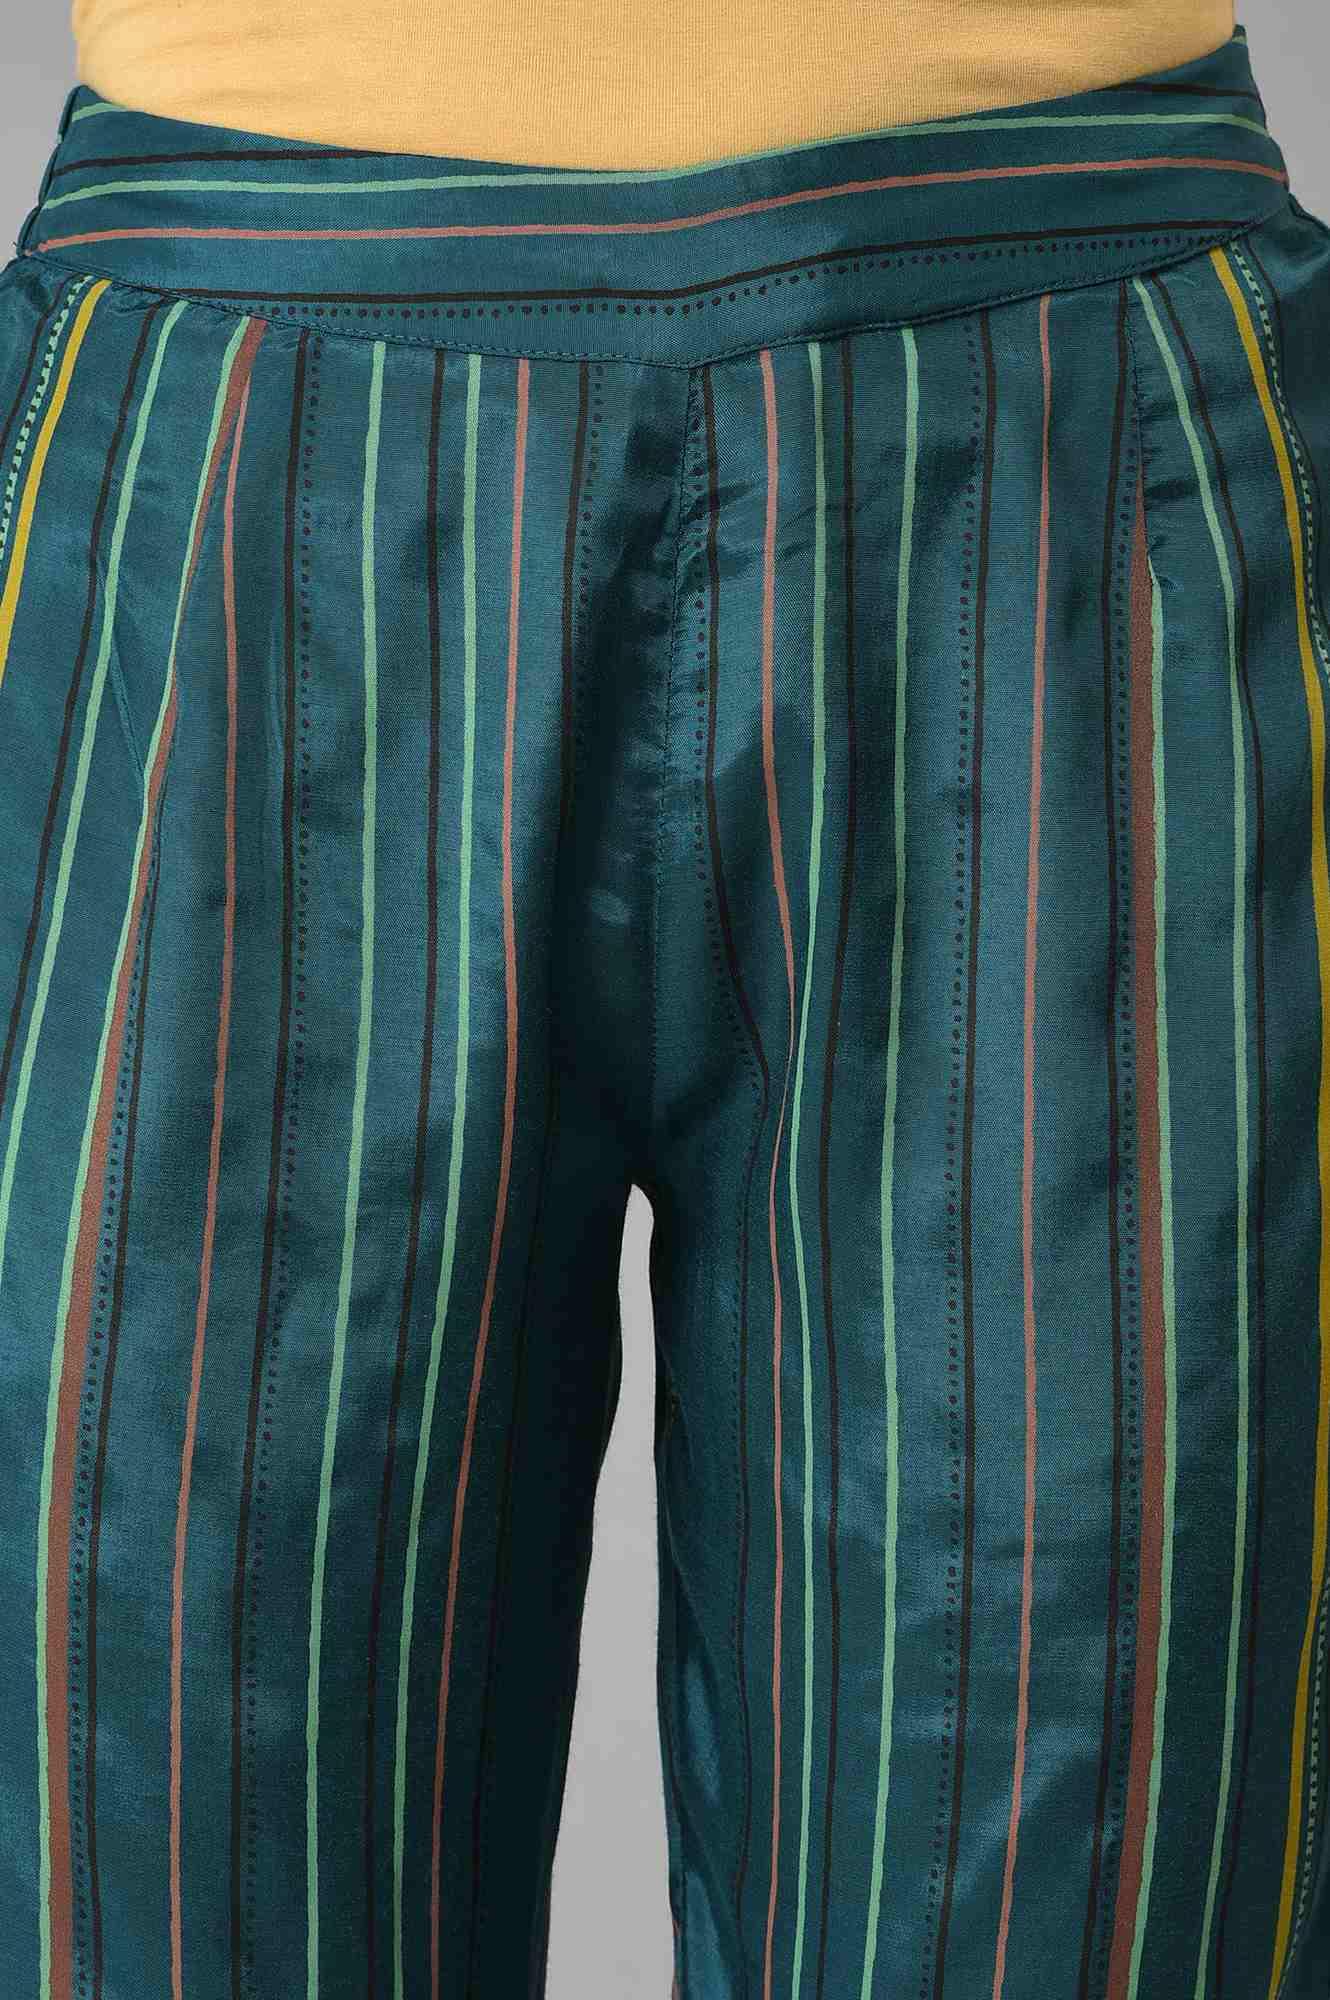 Teal Multi-Coloured Stripe Print Plus Size Pants - wforwoman